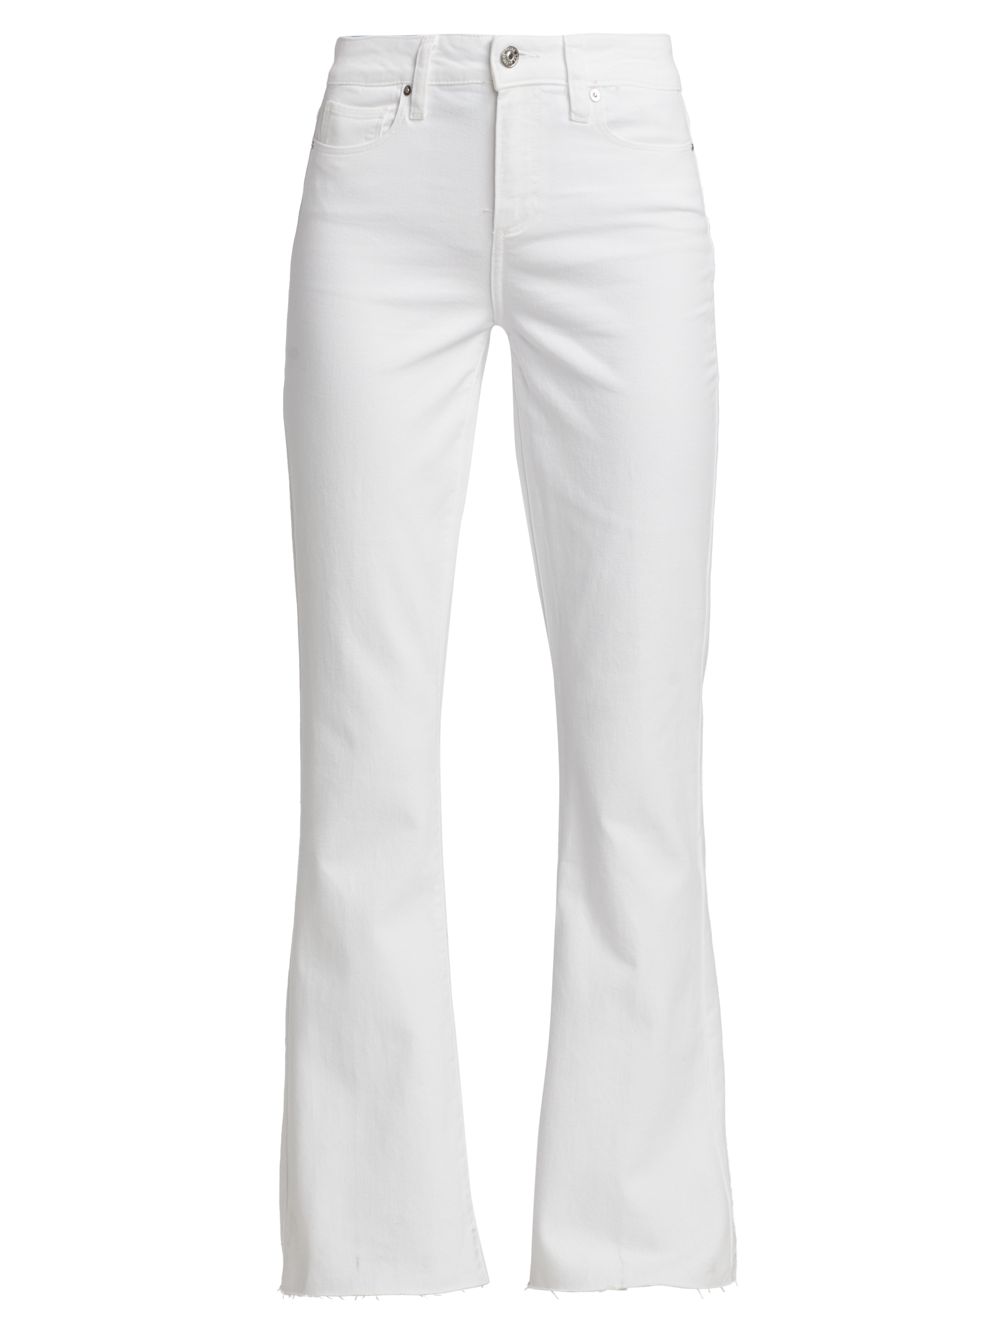 Расклешенные джинсы Laurel Canyon Paige, белый джинсы paige laurel canyon расклешенные с высокой посадкой синий